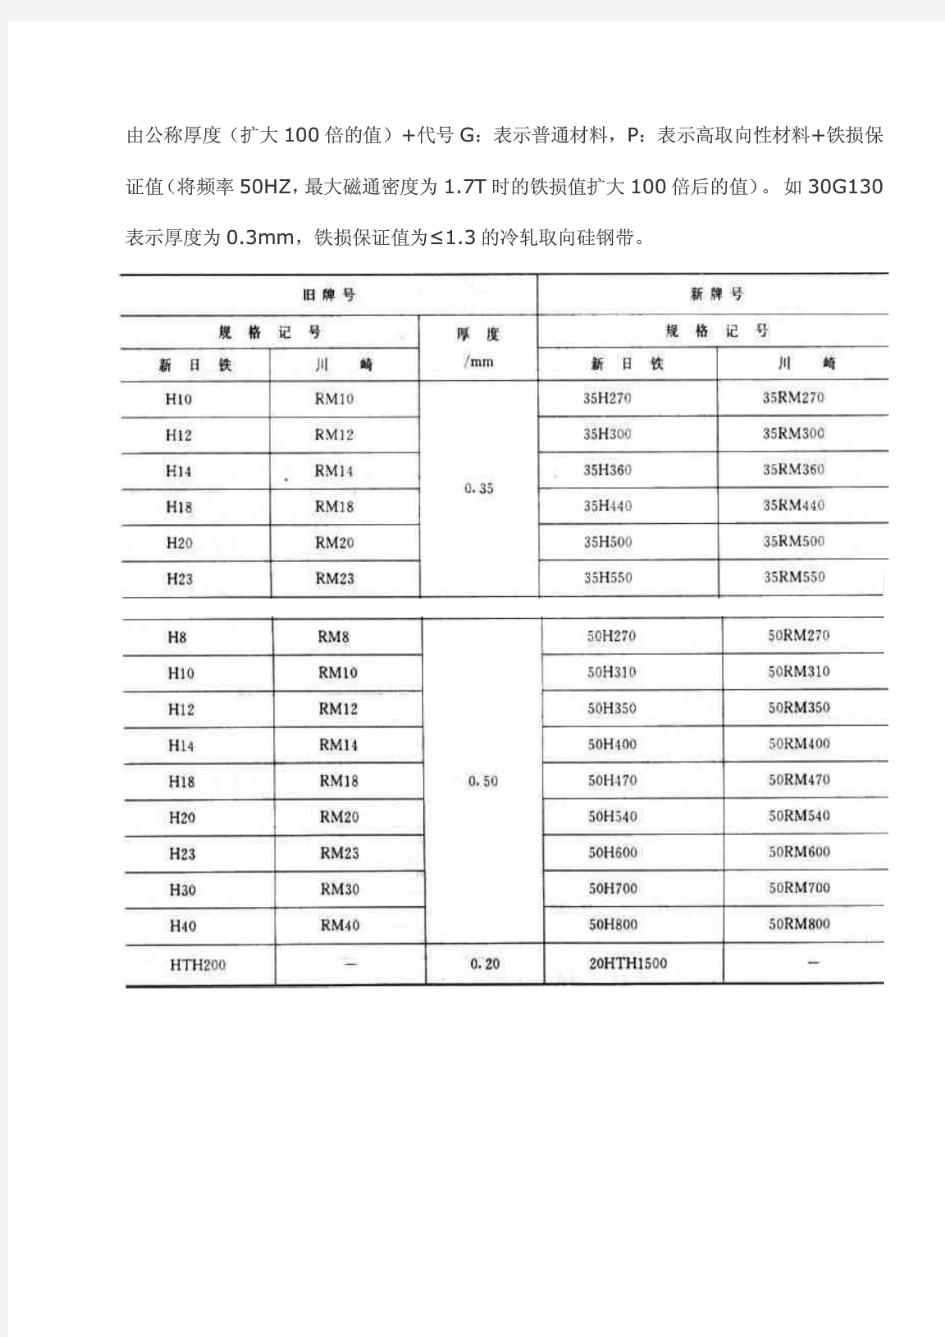 中国、日本硅钢片牌号表示方法及硅钢片牌号对照